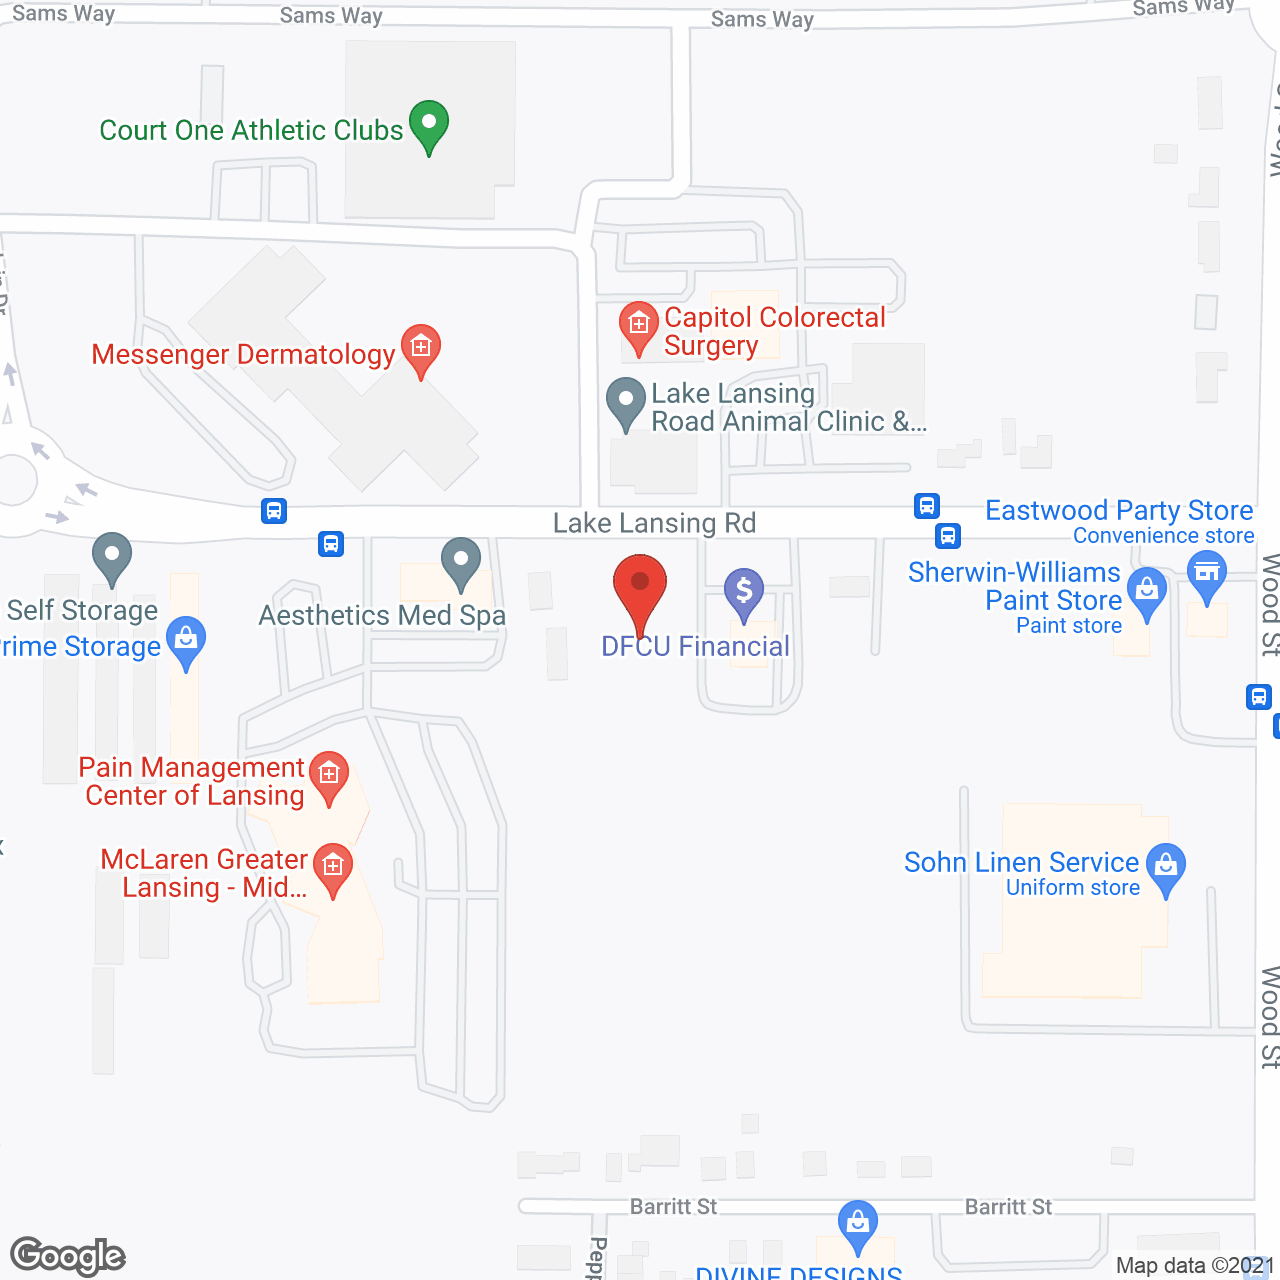 The Ridge at Lansing in google map